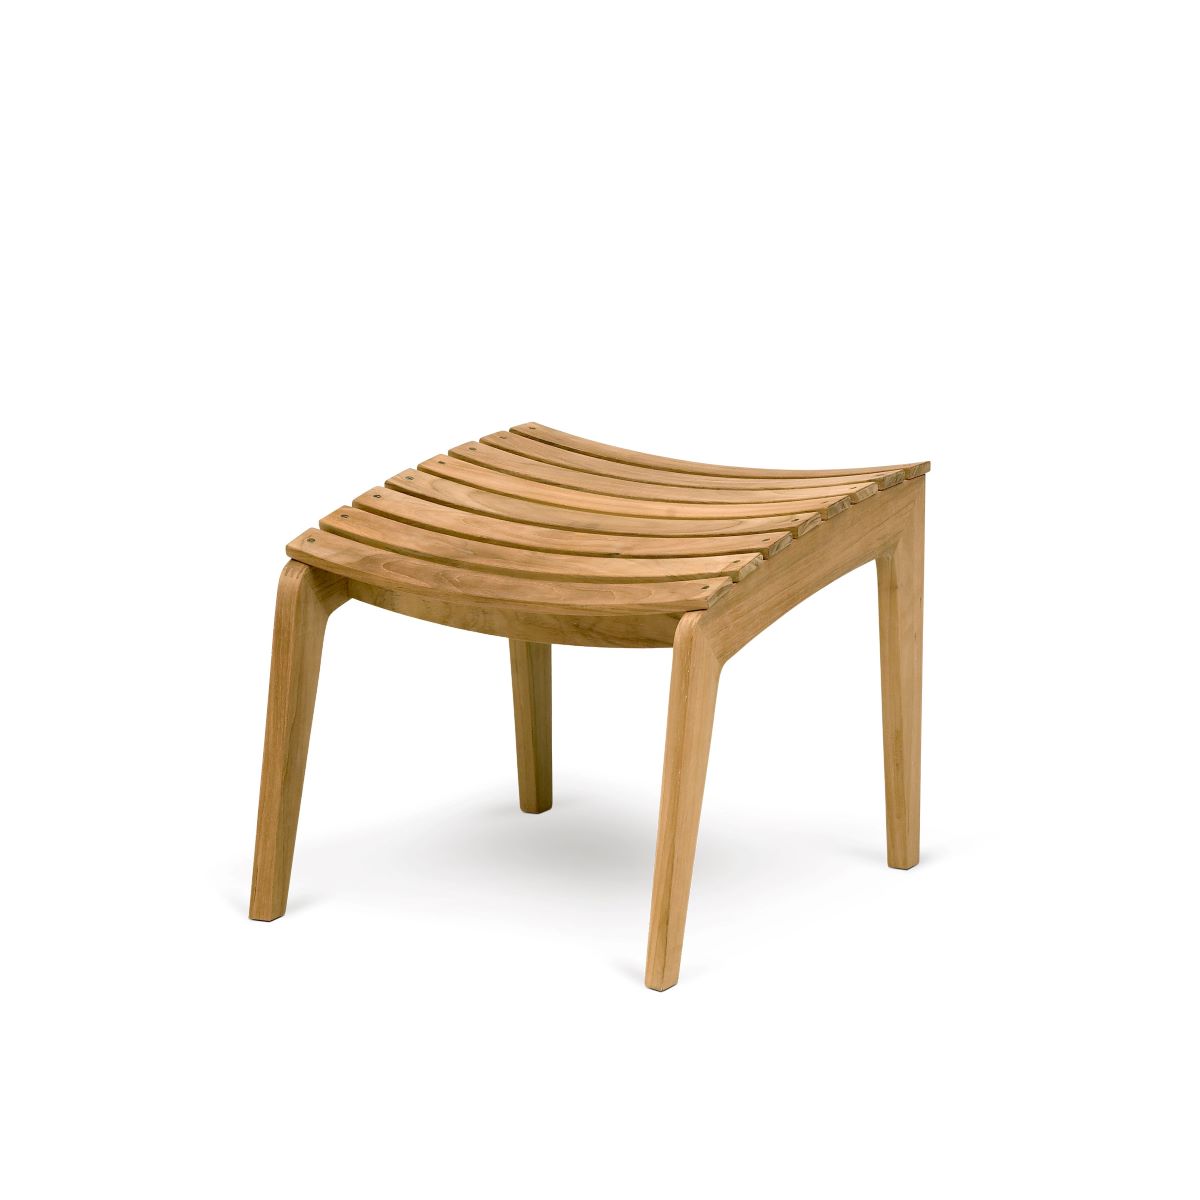 https://bo.alinhadavizinha.com/FileUploads/produtos/mobiliario/exterior/s1508700_regatta-lounge-stool_1.jpg